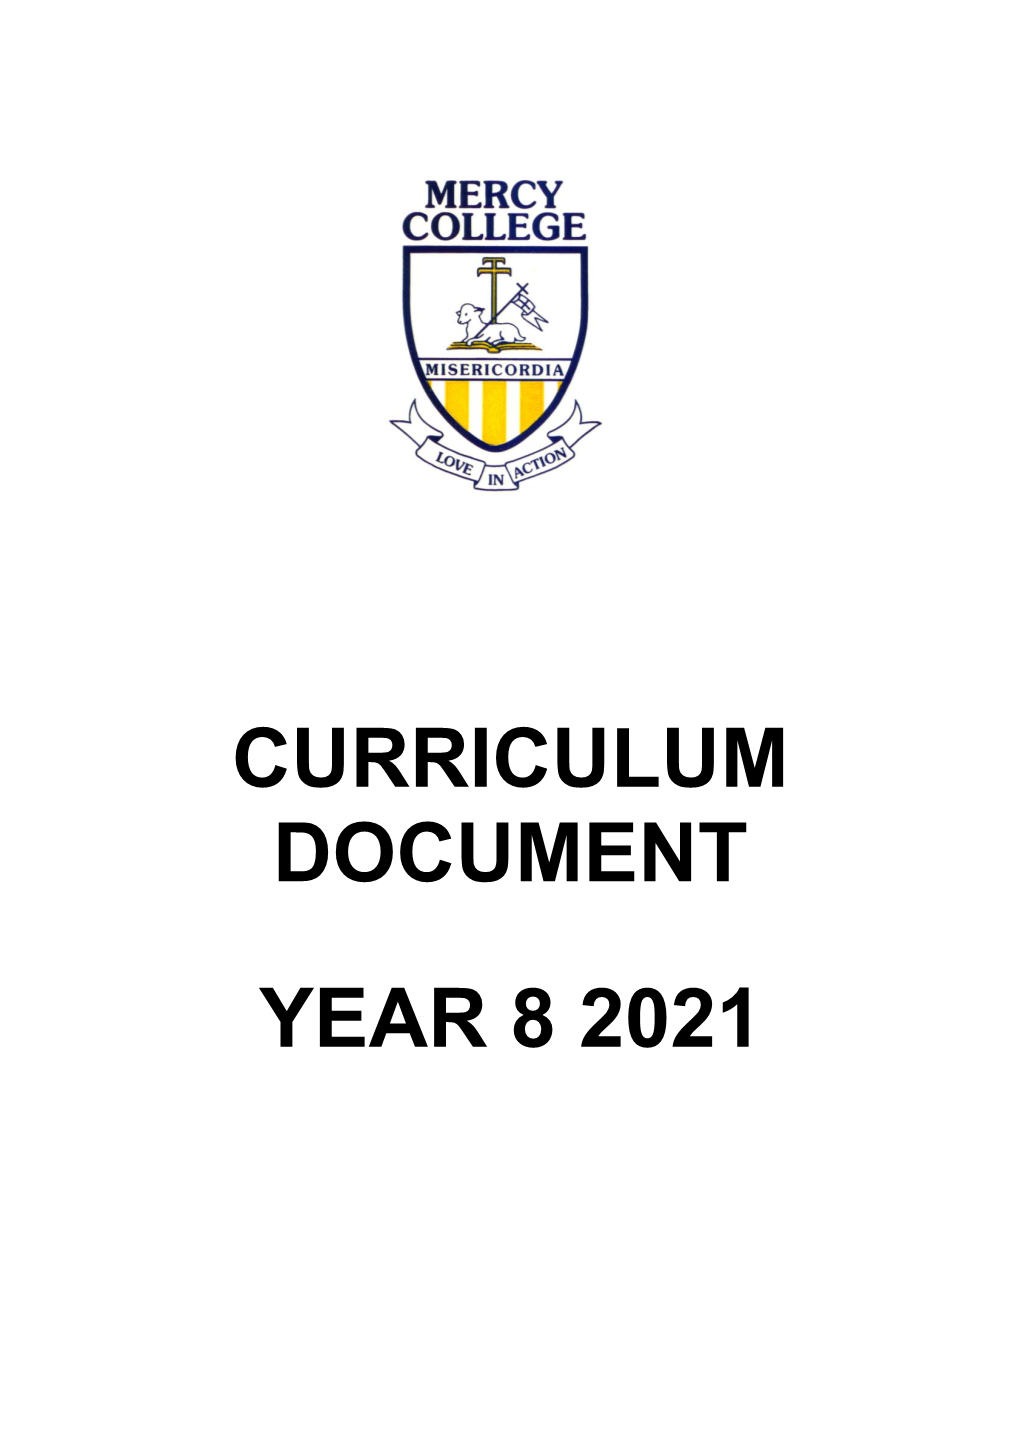 Curriculum Document Year 8 2021